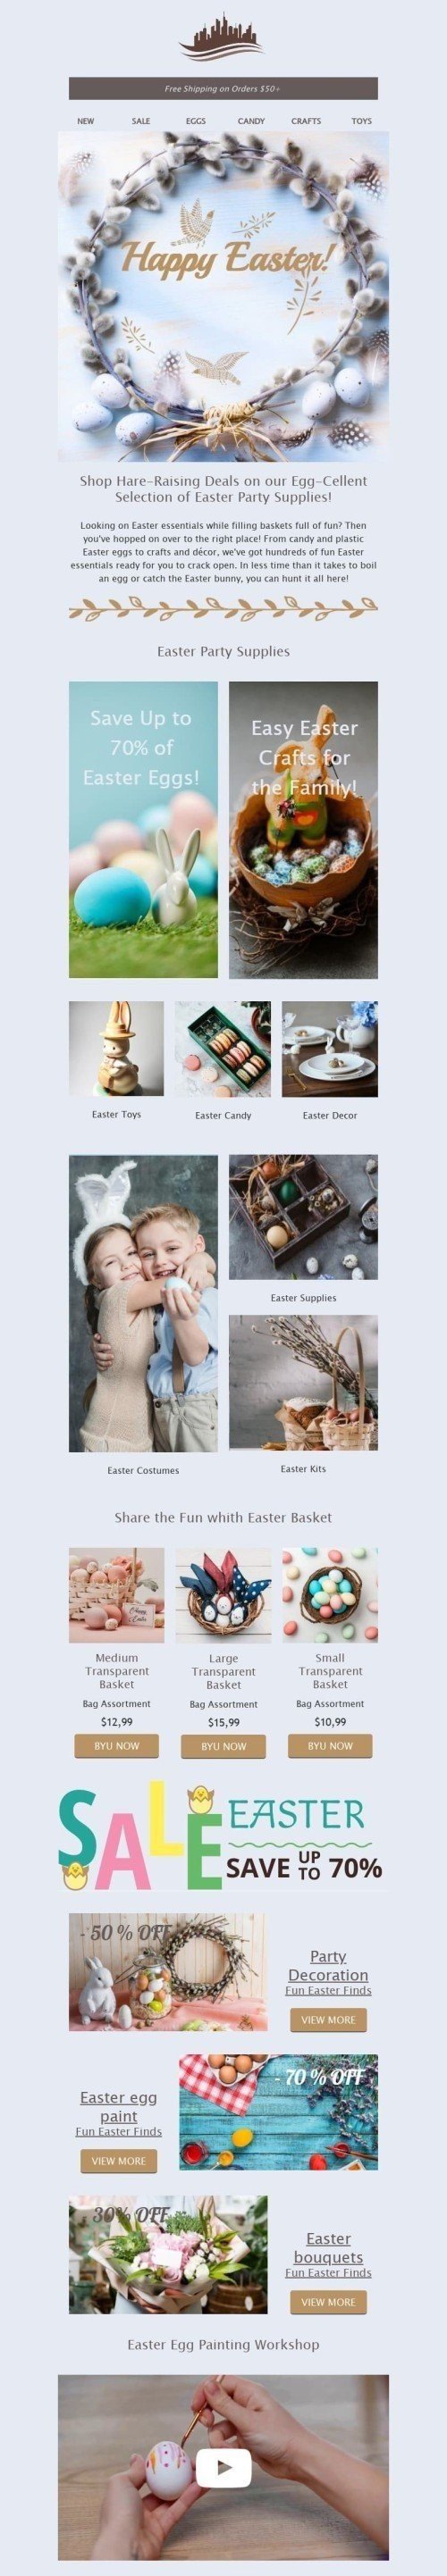 Plantilla de correo electrónico «Tienda de Pascua» de Semana Santa para la industria de Gastronomía mobile view